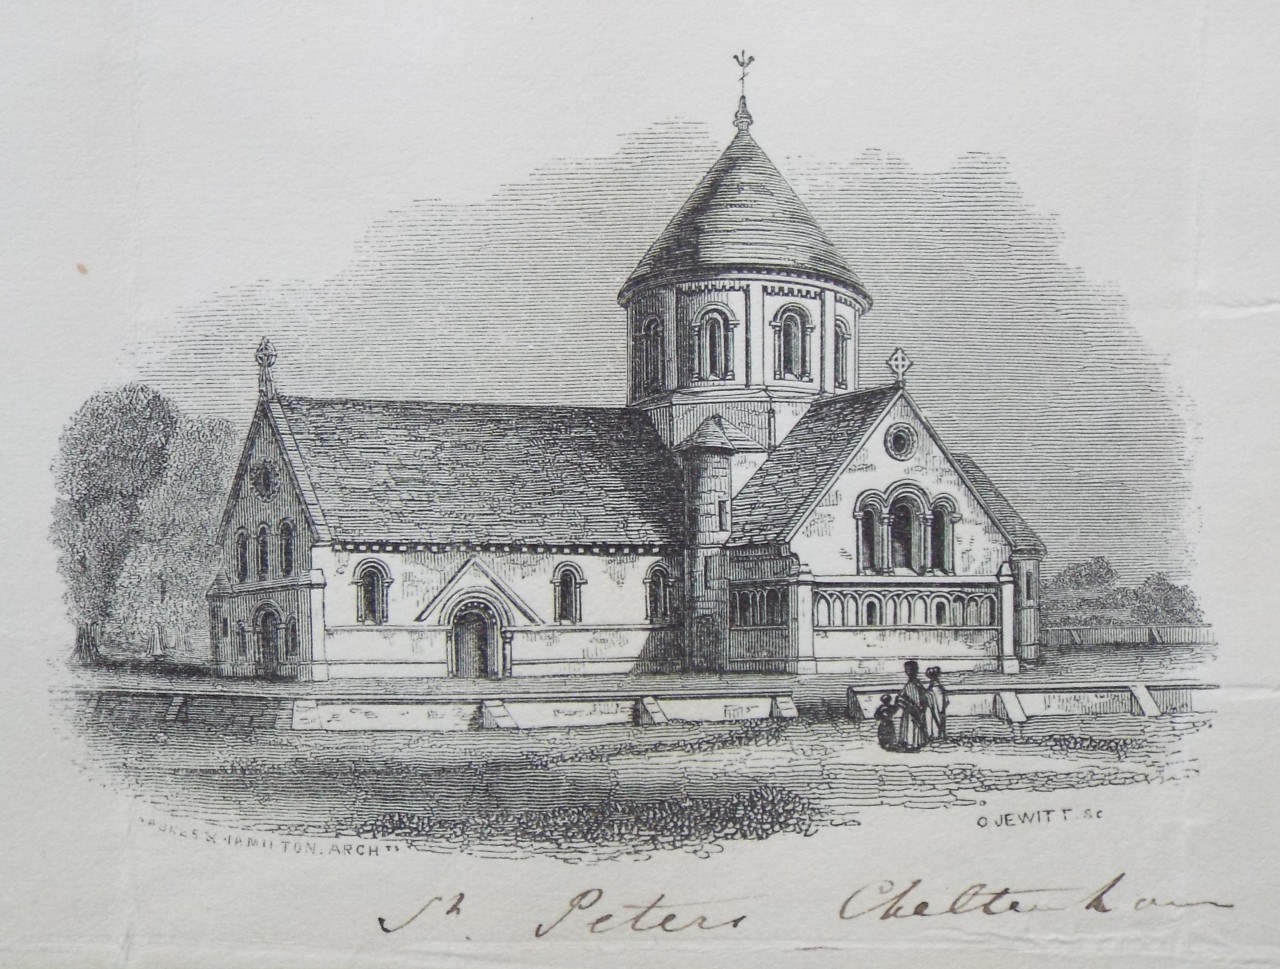 Wood - St. Peter's Cheltenham - Jewitt